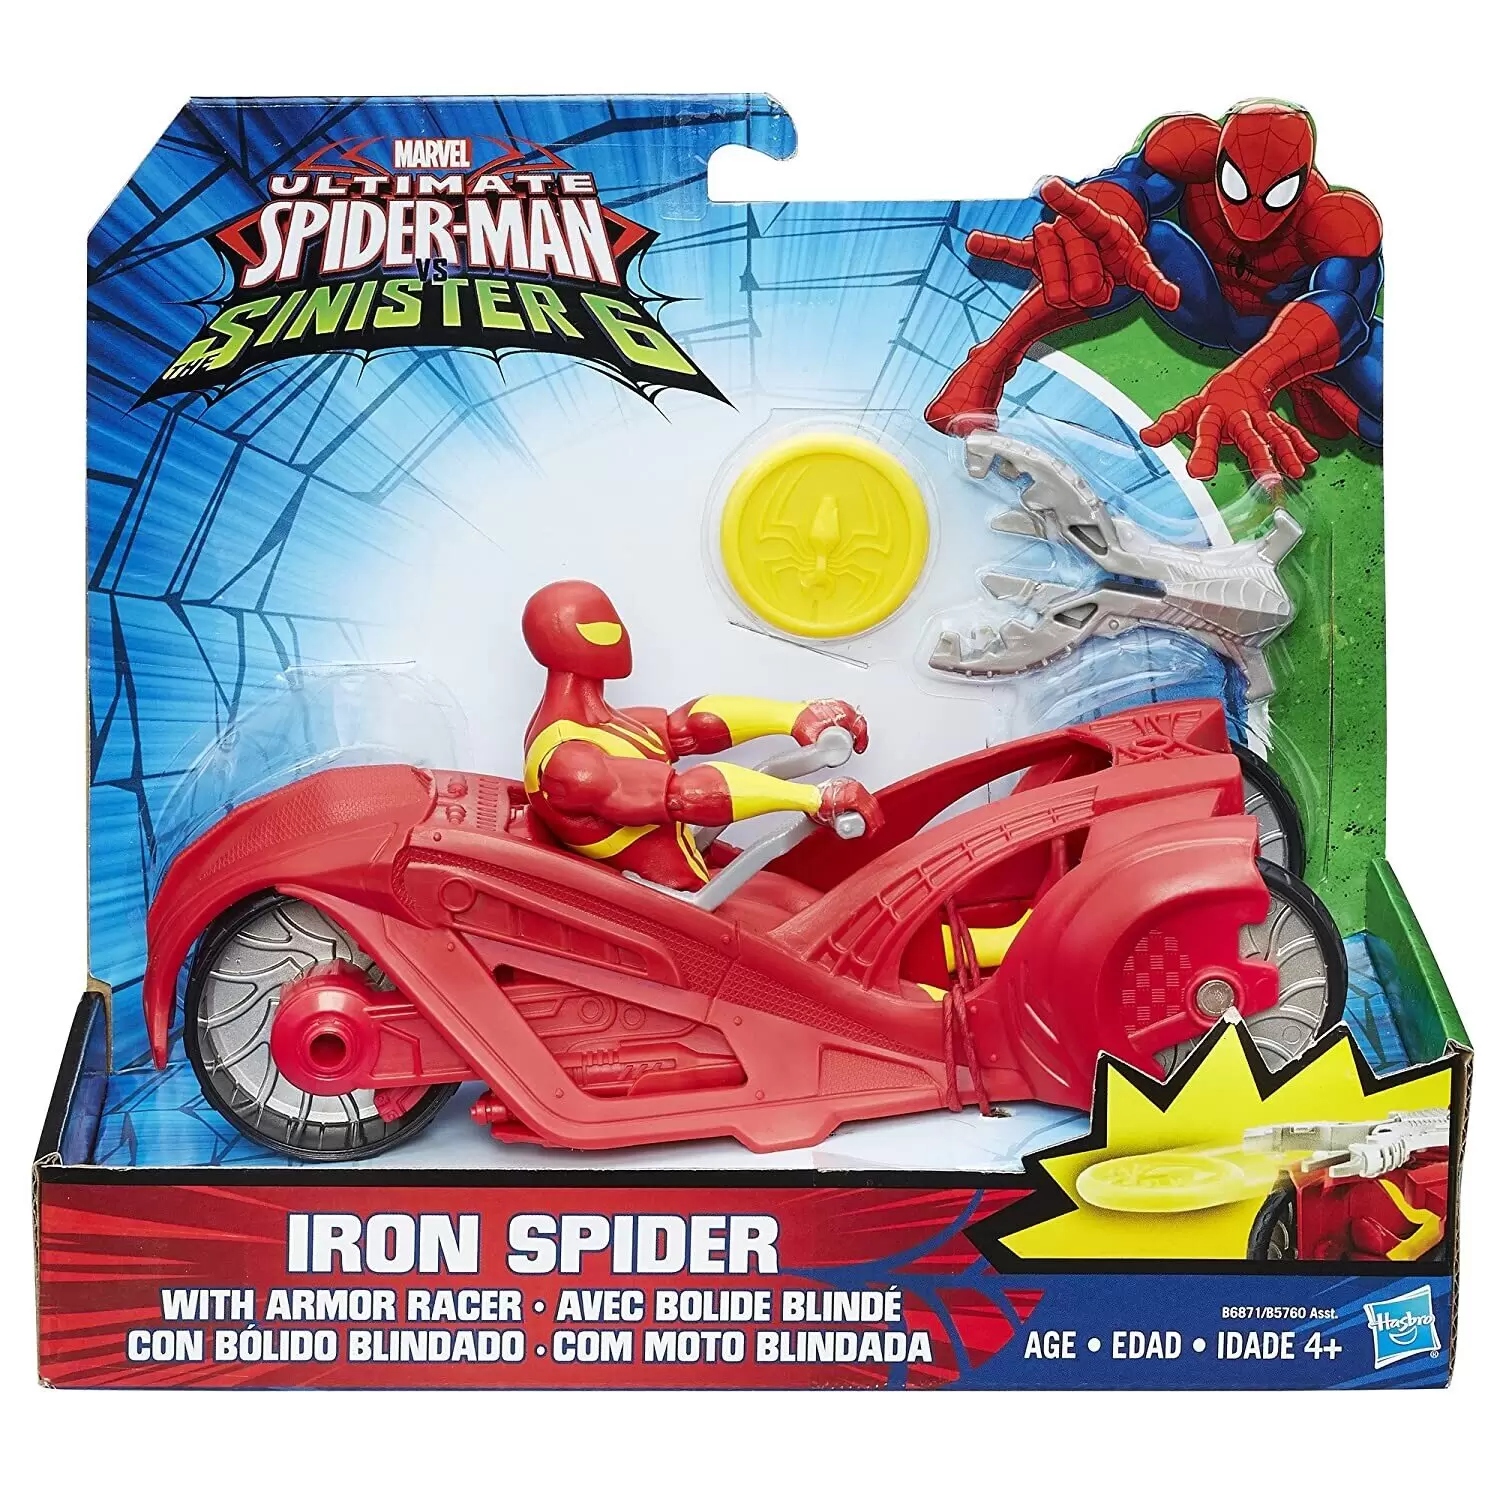 iron spider ultimate spider man